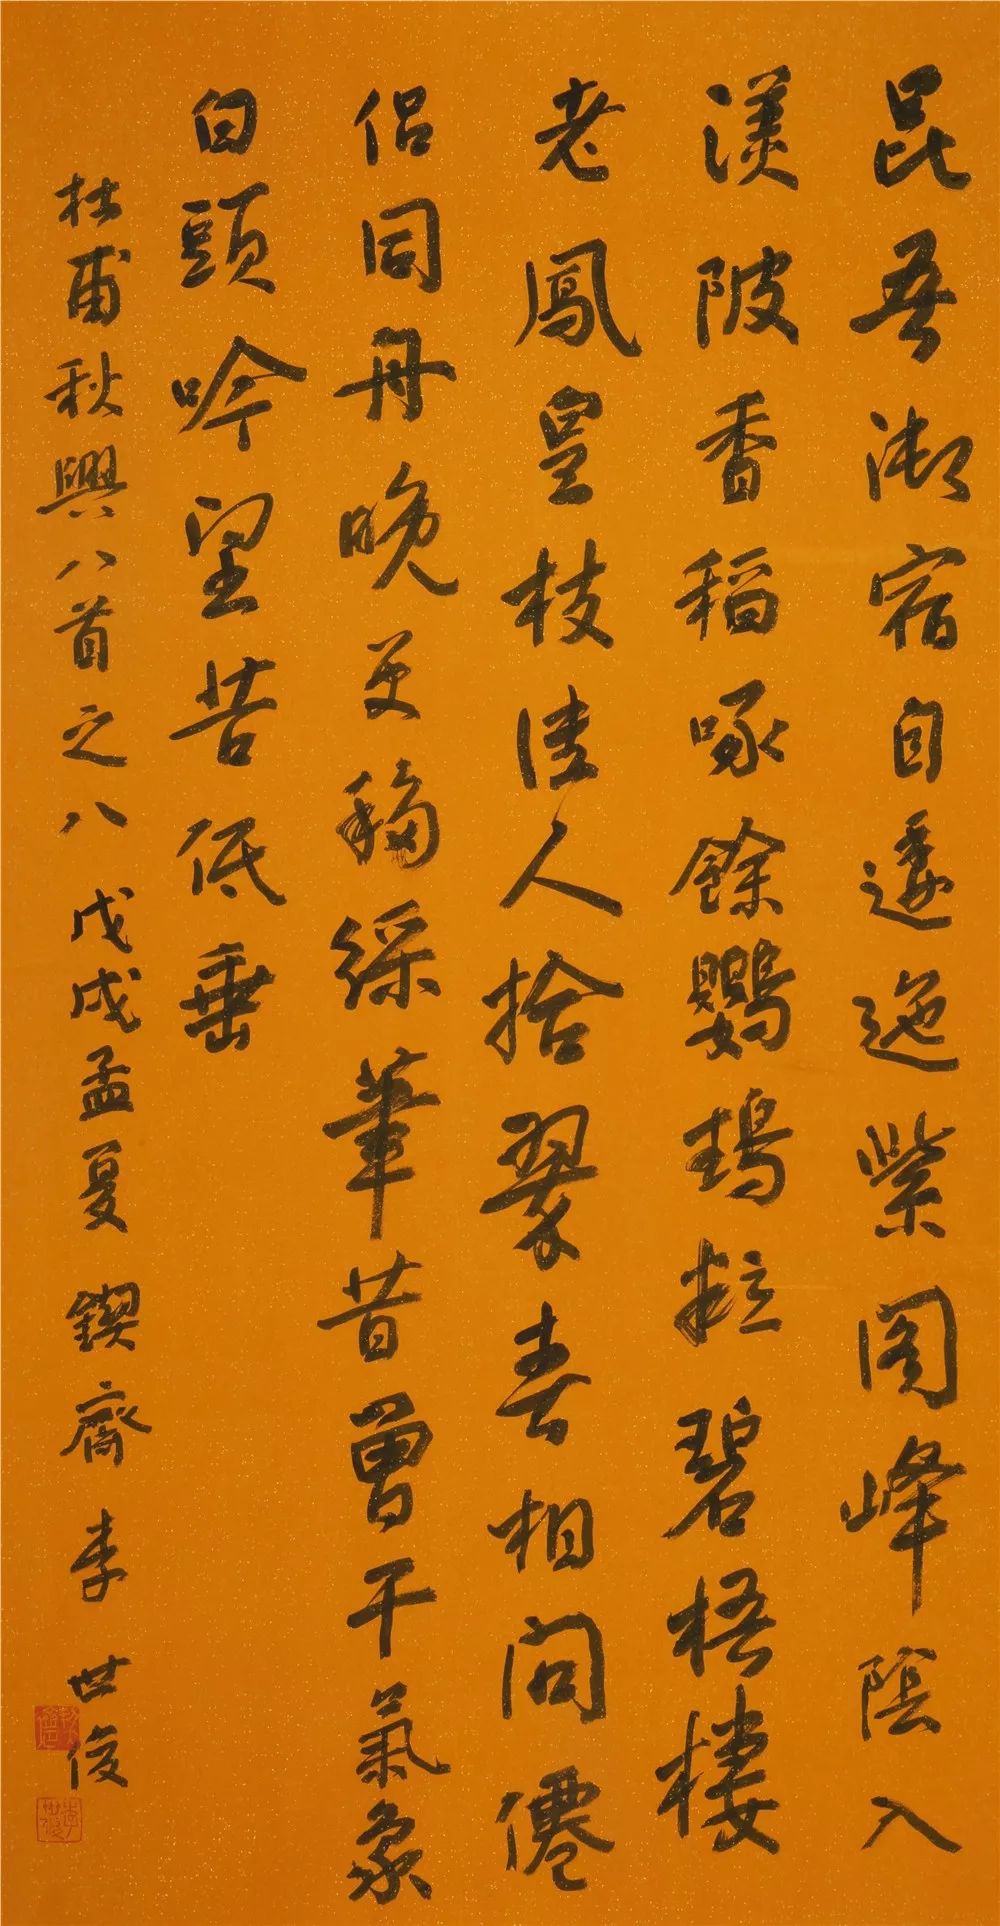 行藏翰墨——李世俊书法作品展在成都杜甫草堂博物馆开幕